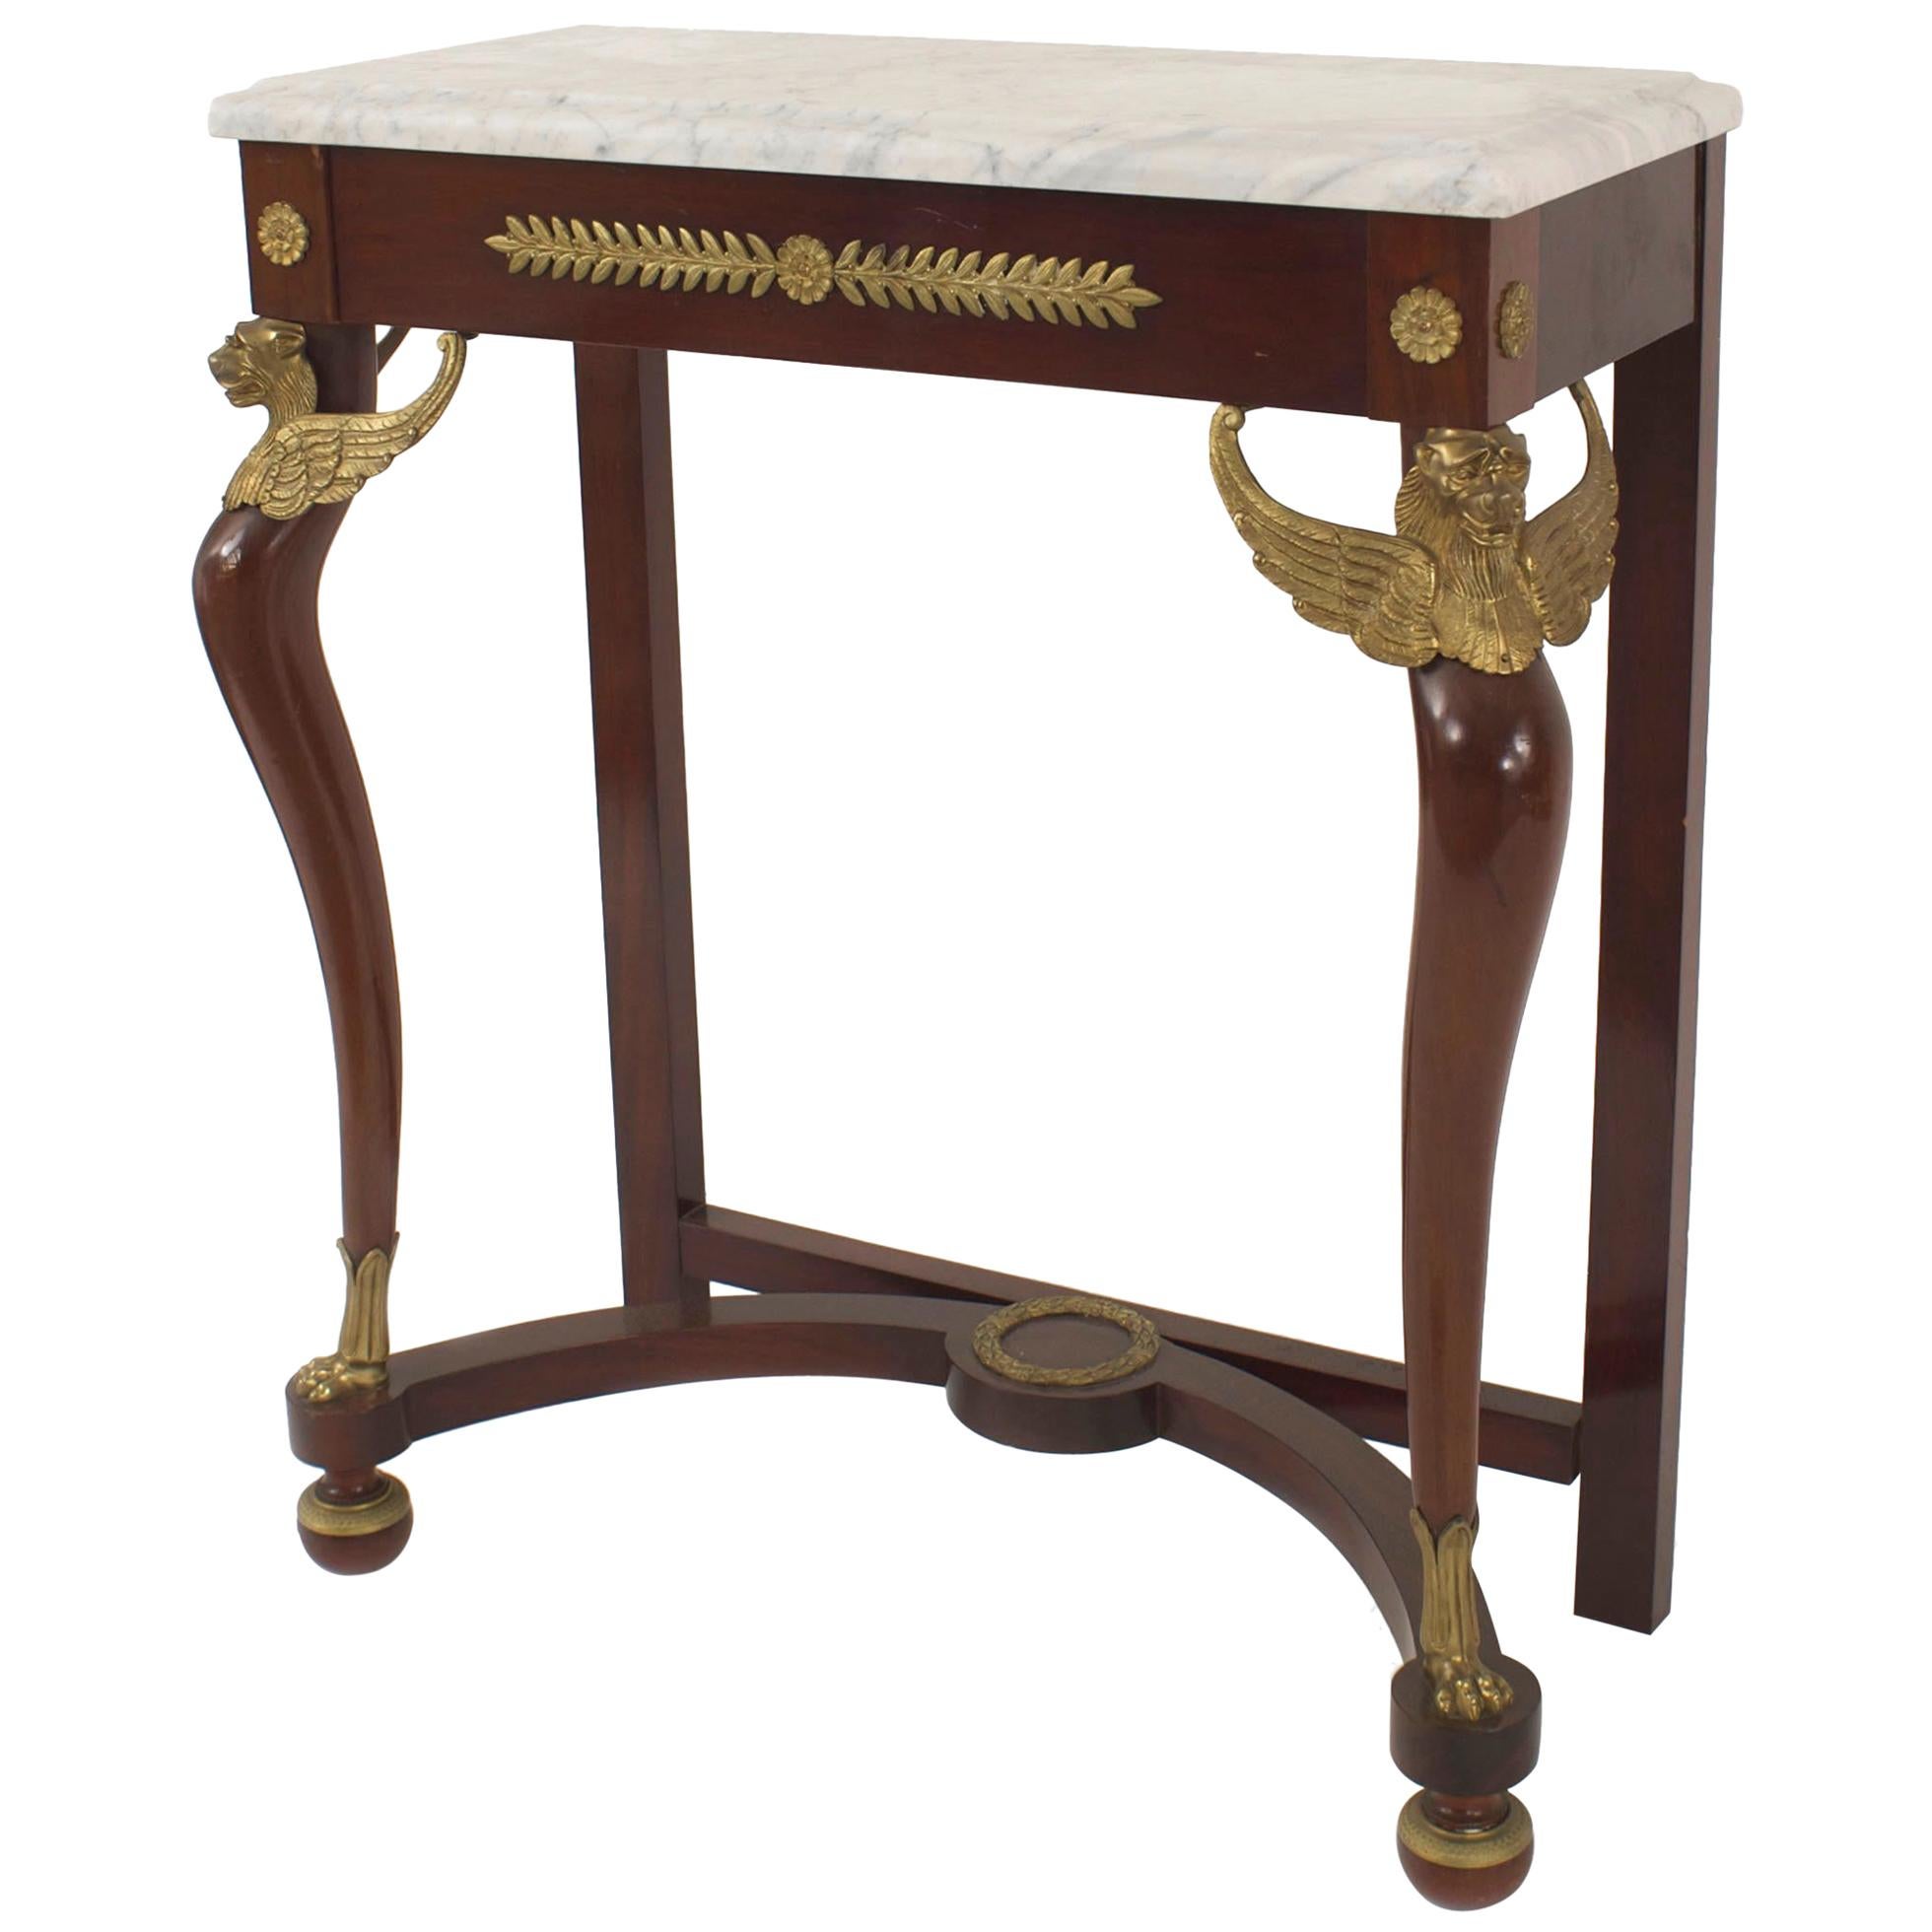 Table console de style Empire français du XIXe-XXe siècle